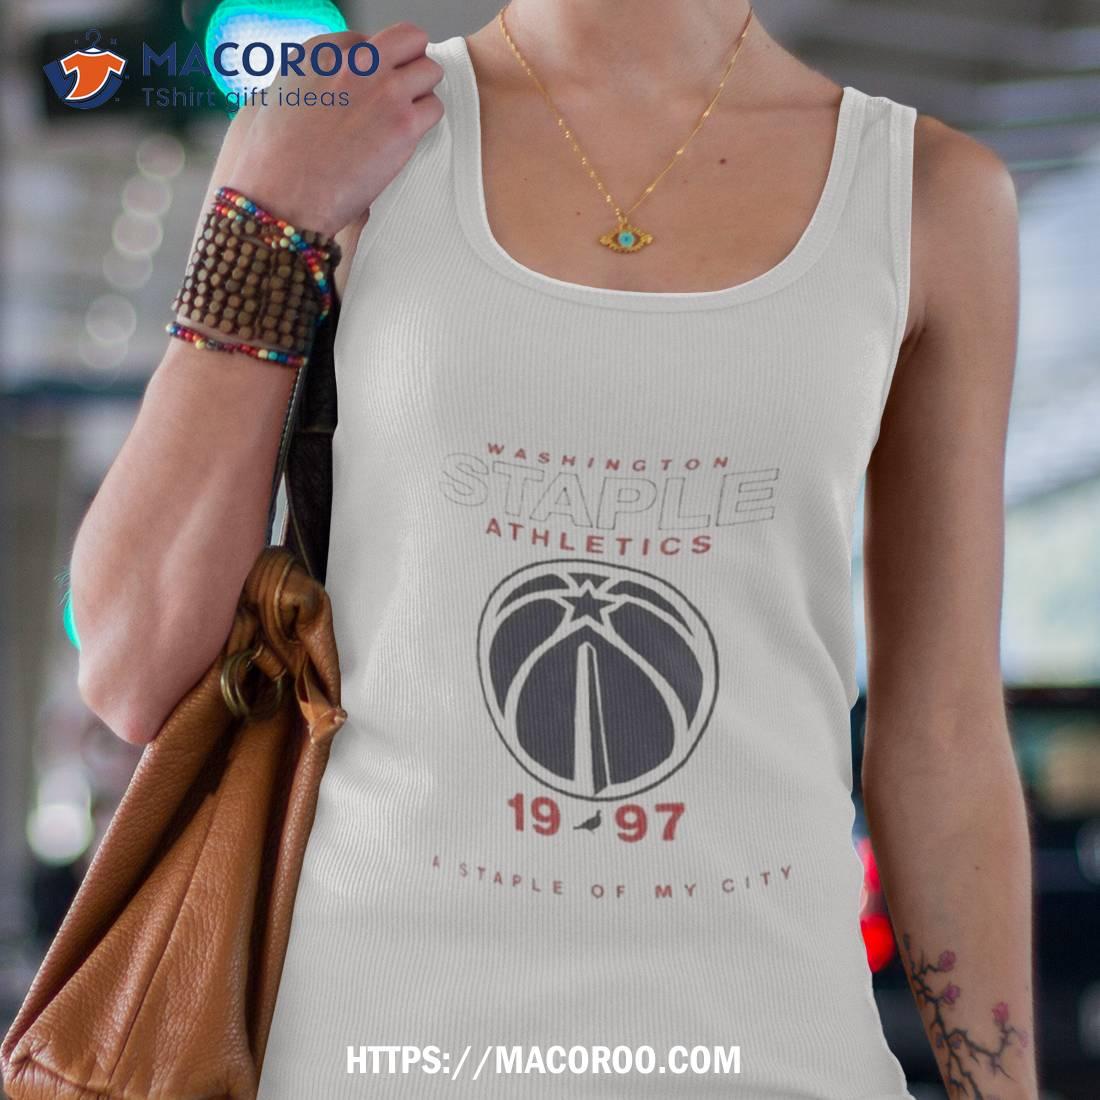 Men's NBA x Staple White Washington Wizards Home Team T-Shirt Size: 3XL